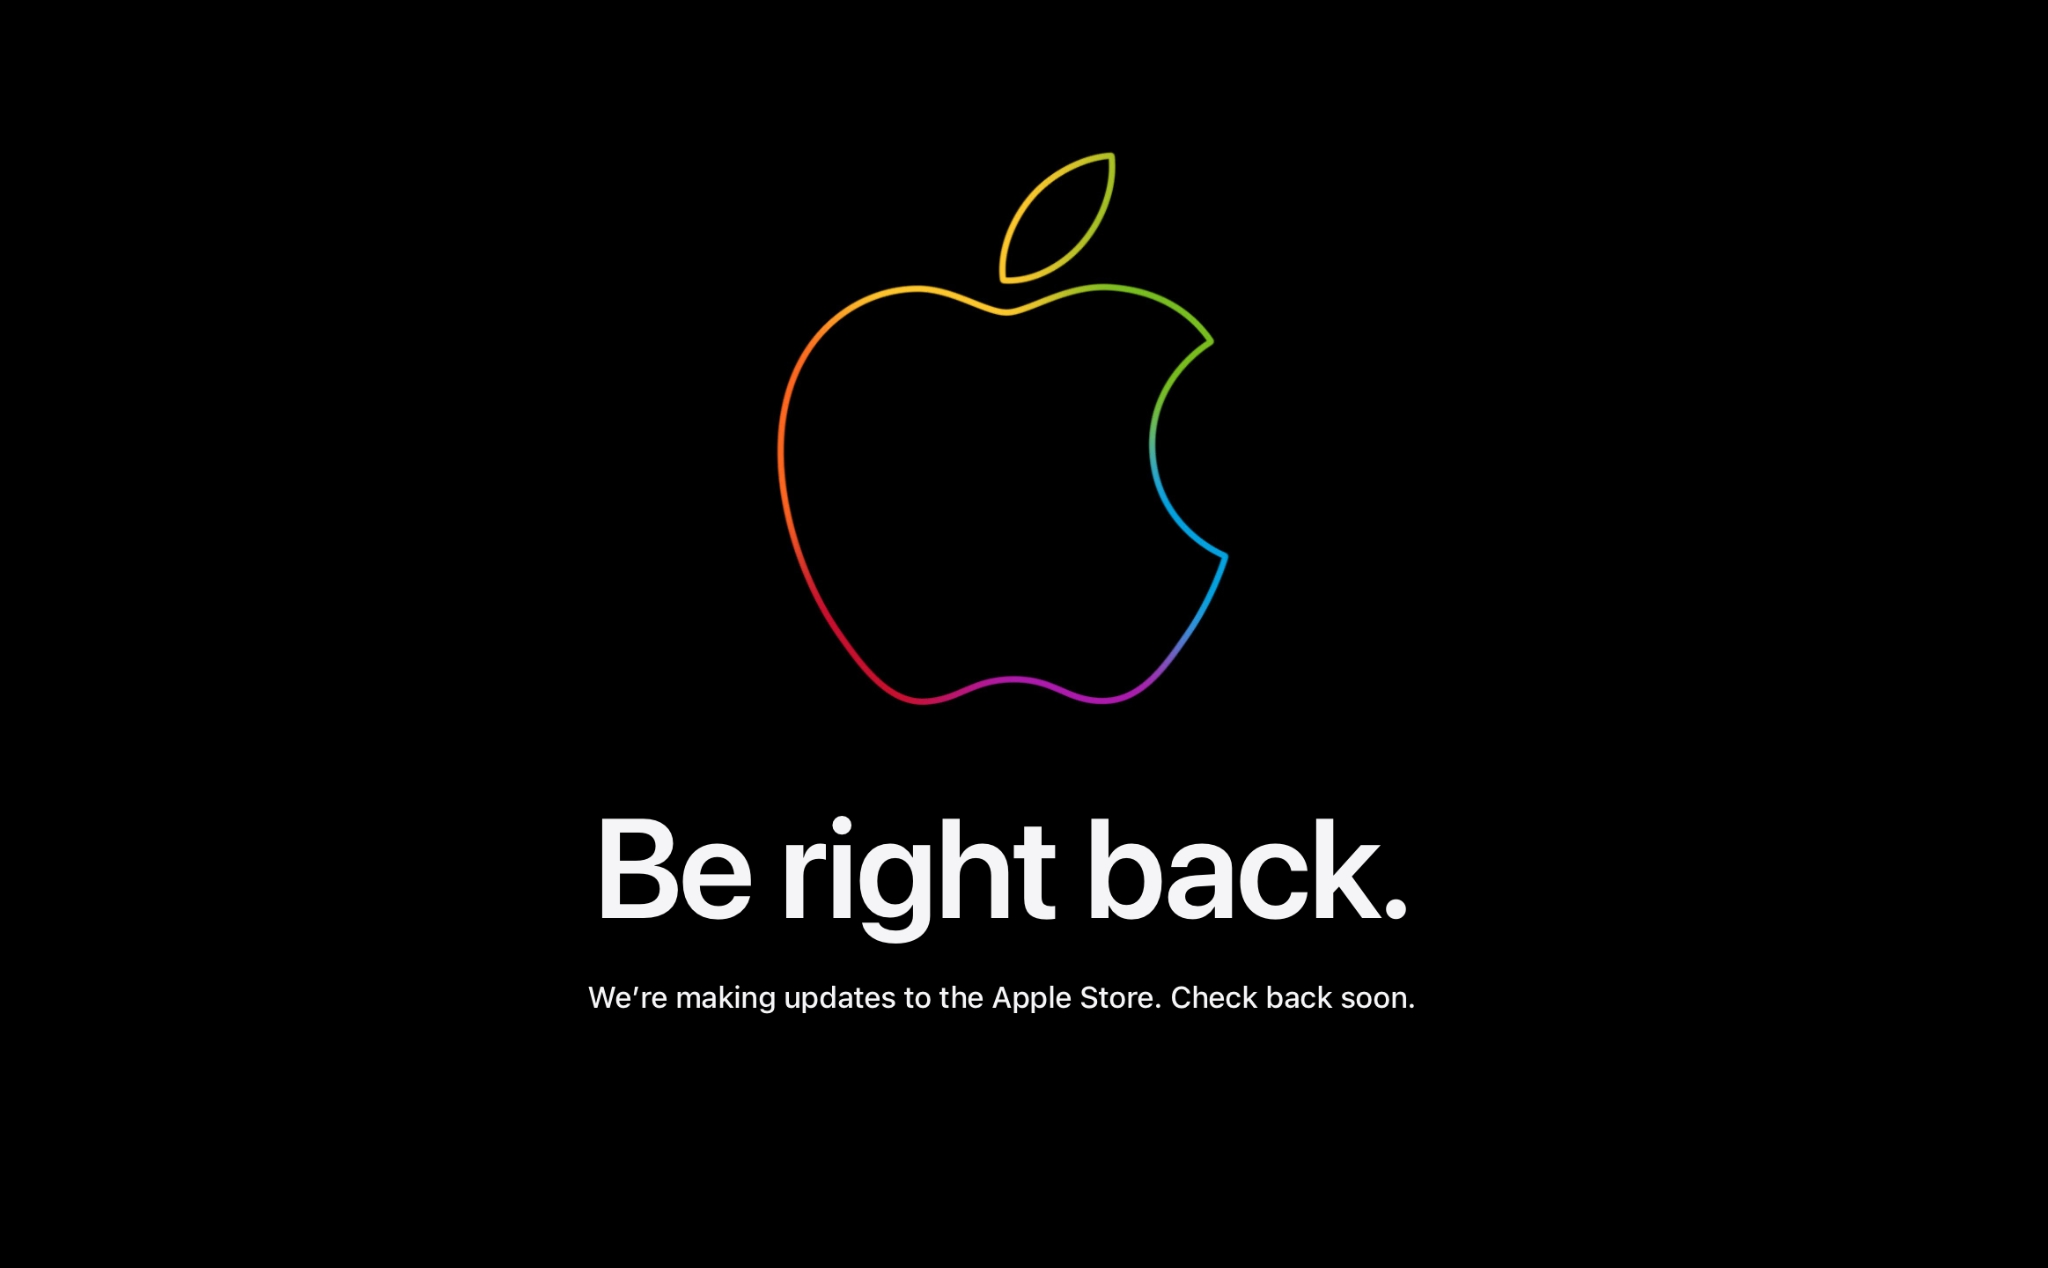 Apple đóng cửa hàng trực tuyến để cập nhật sản phẩm, chuẩn bị có đồ gì mới đây anh em ?